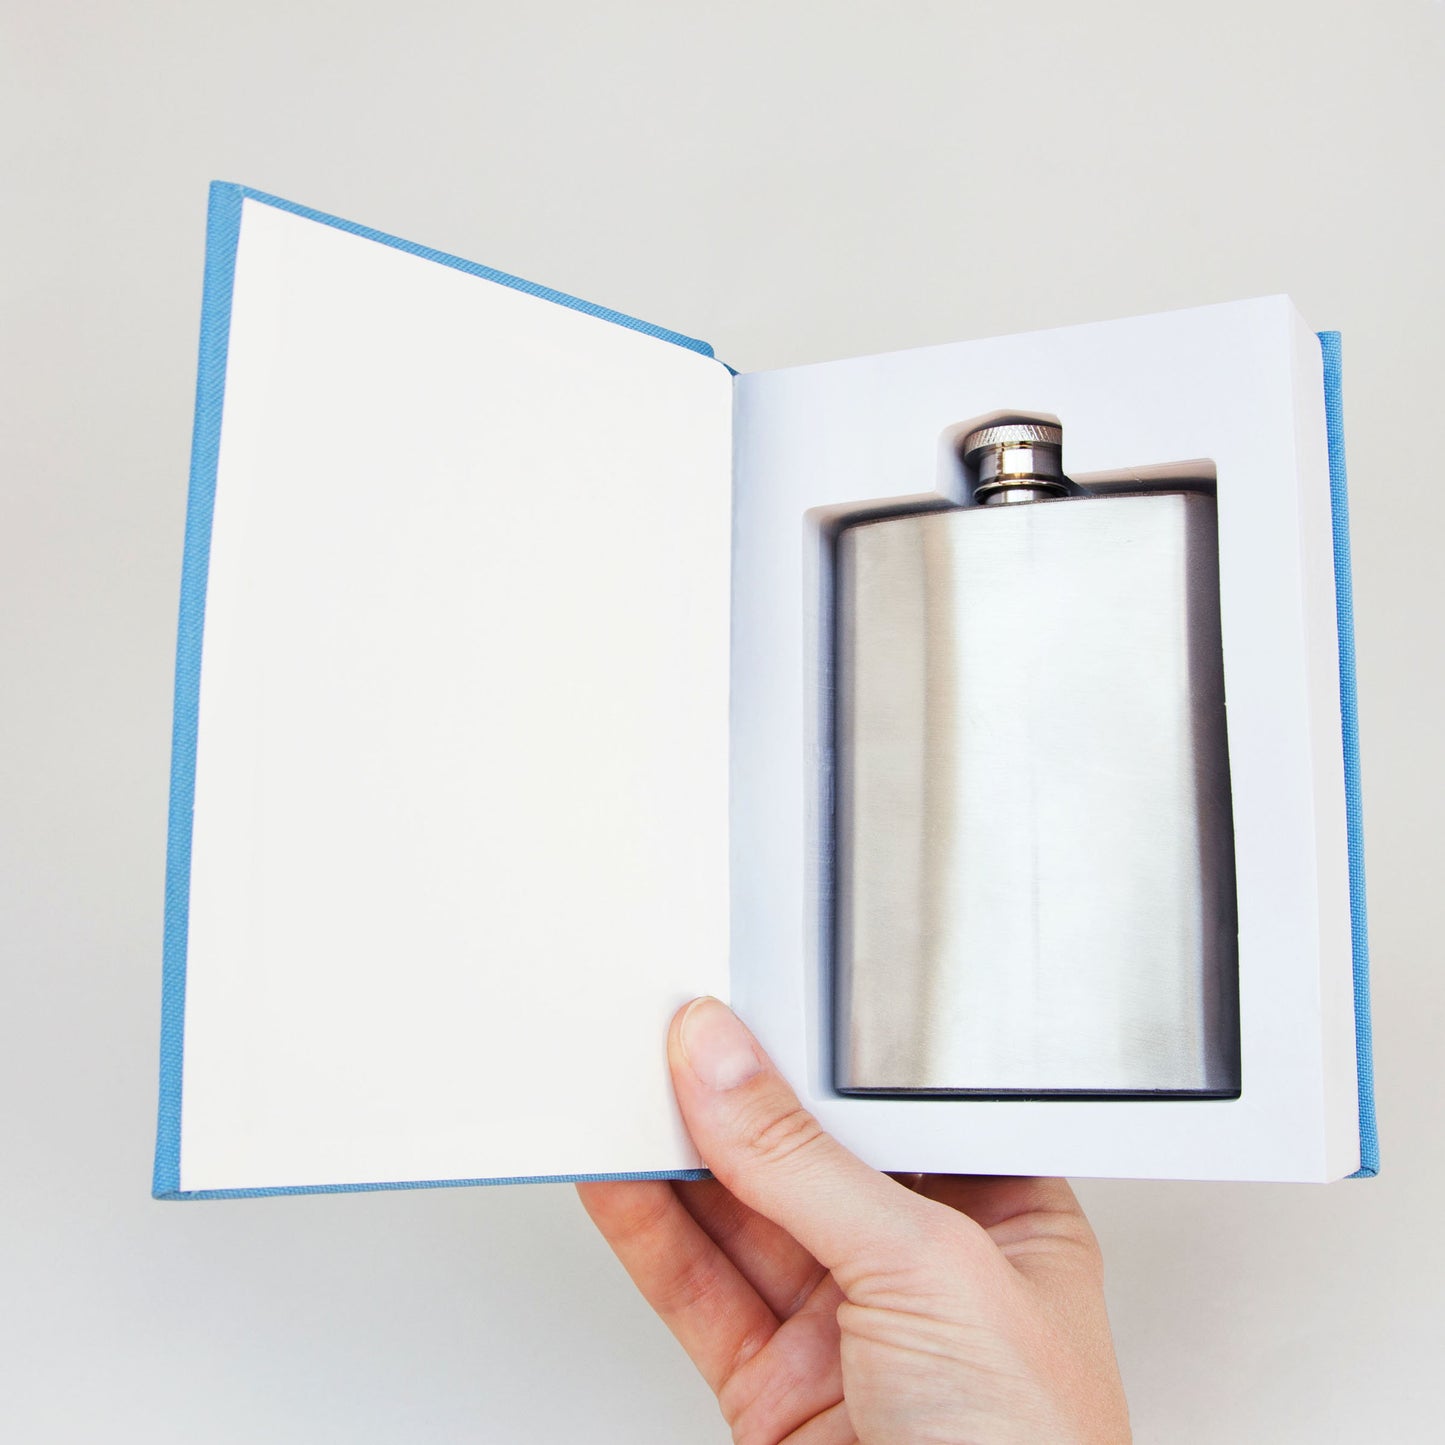 Suck Uk: Flask in a Self-Help book